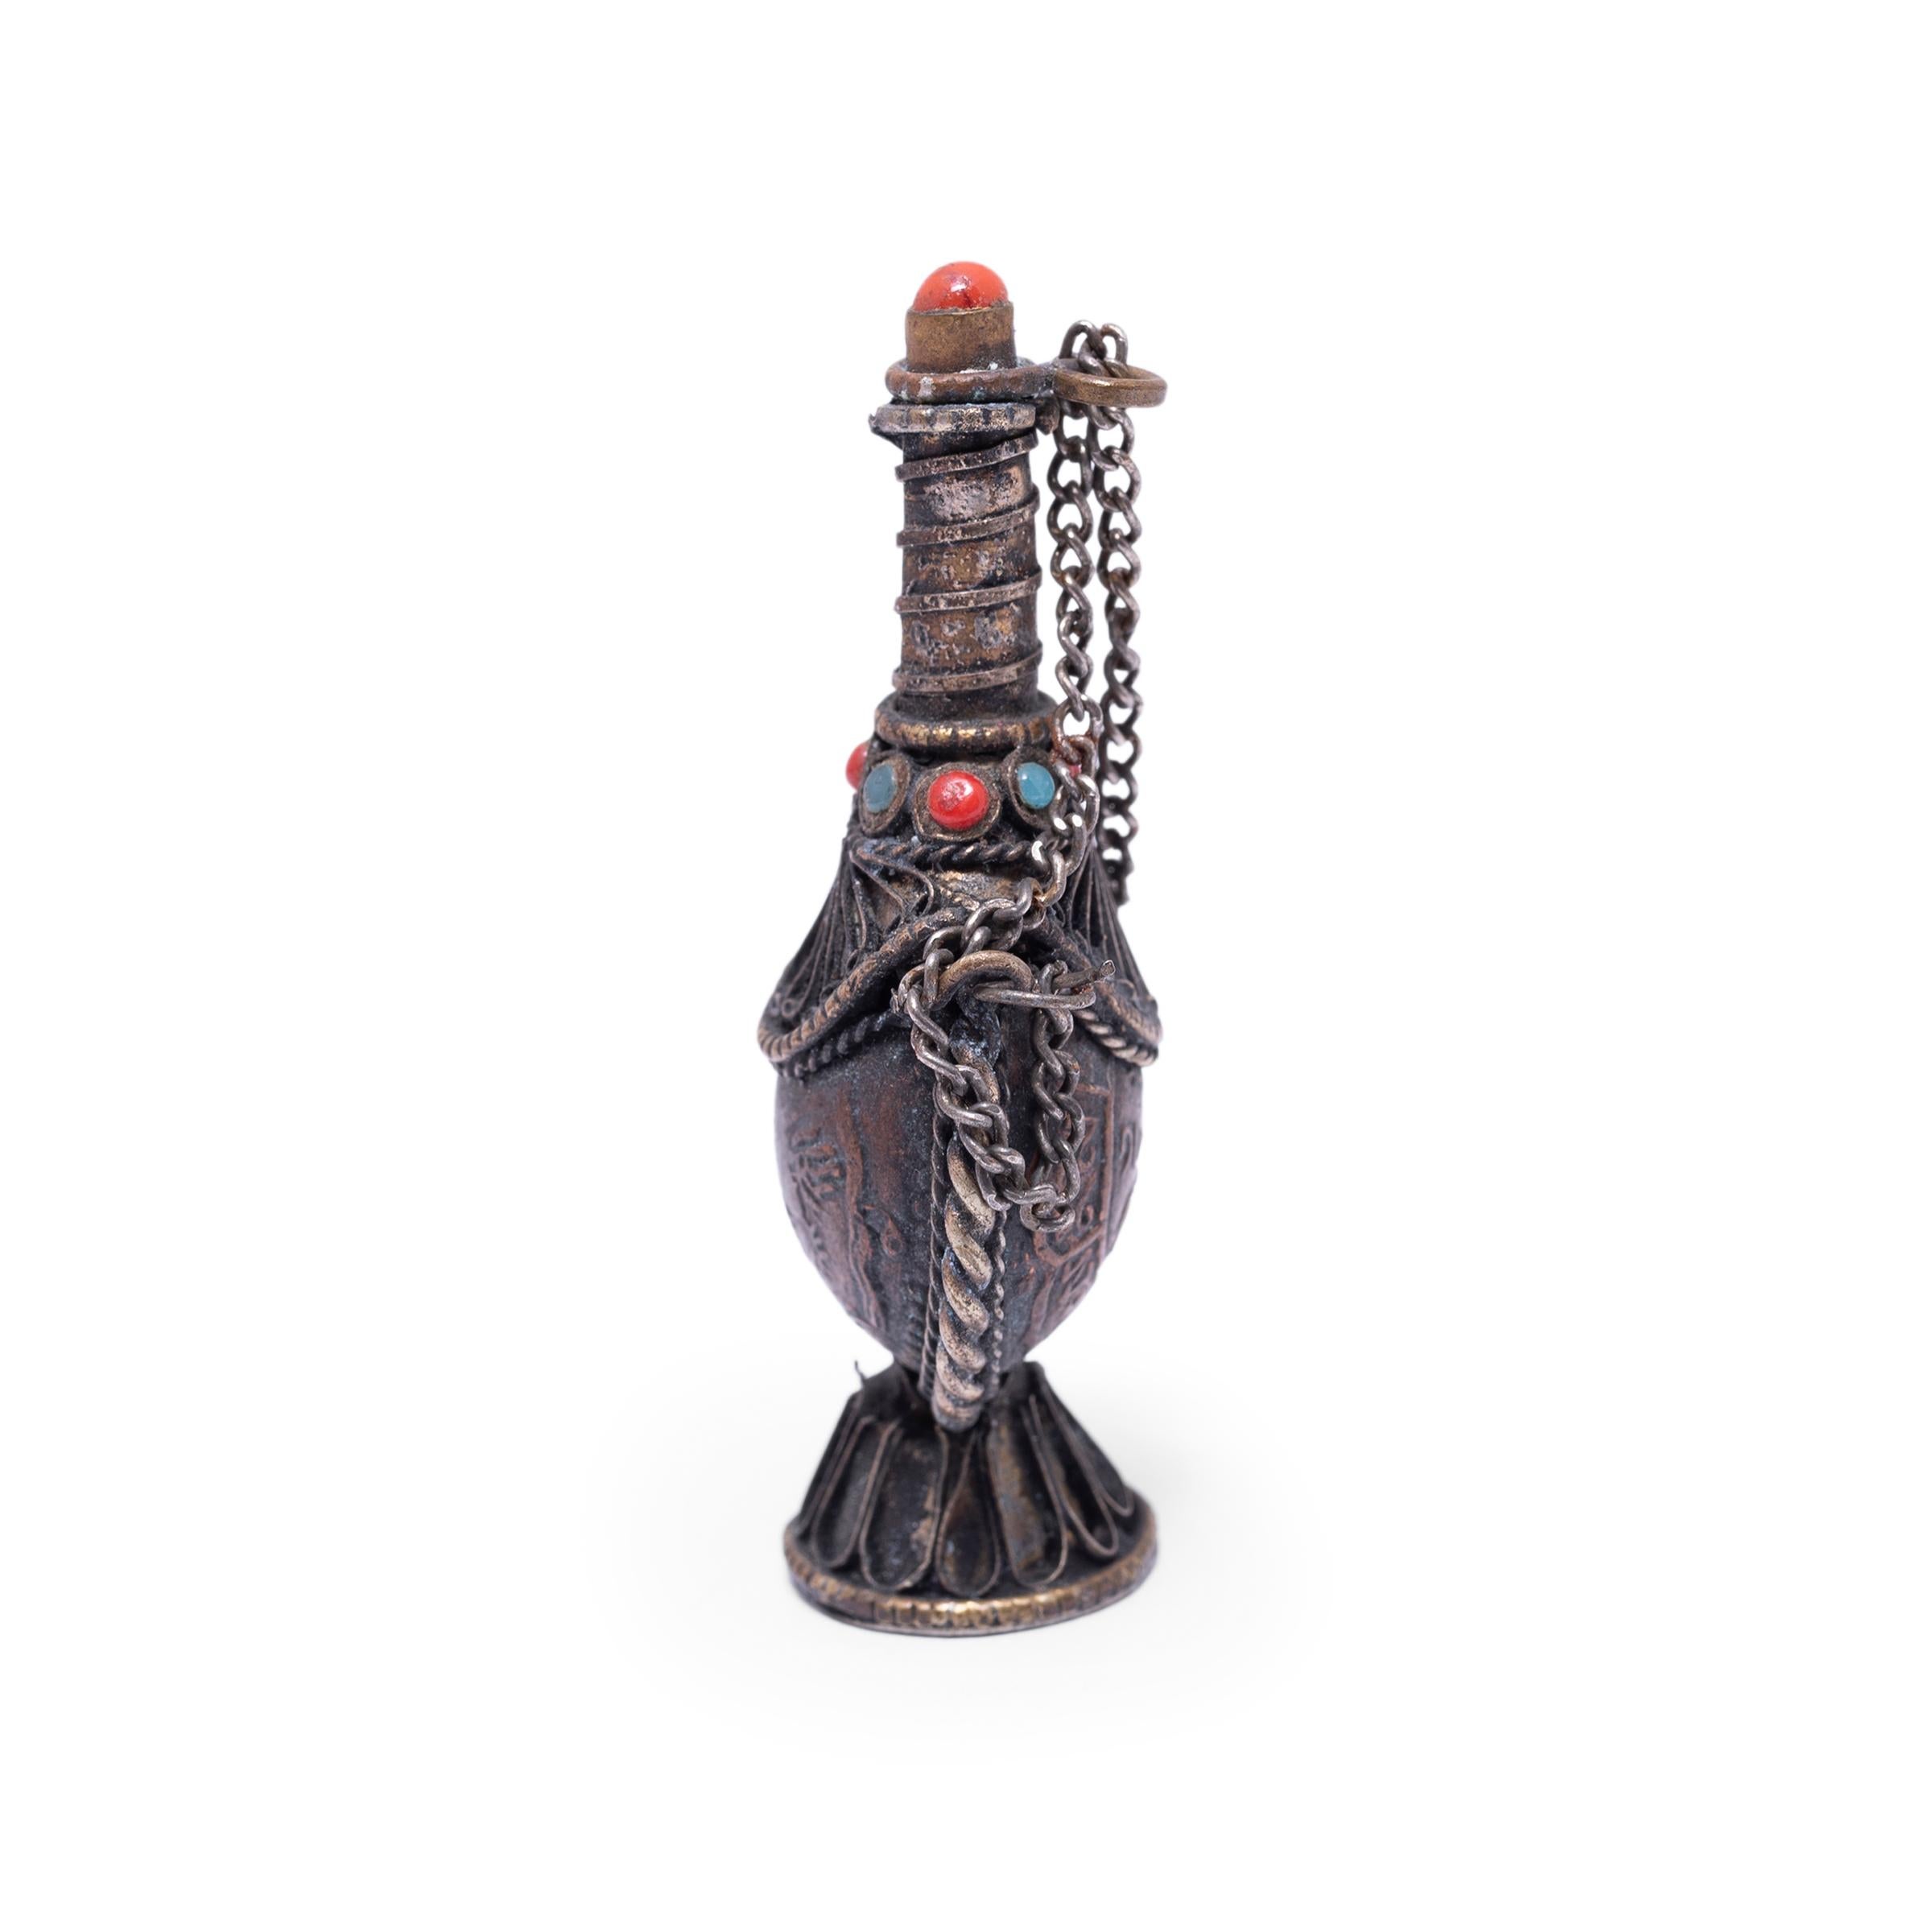 Diese tibetische Schnupftabakflasche aus dem frühen 20. Jahrhundert ist wunderschön verziert, mit silbernen Metallarbeiten versehen und mit bunten Perlen verziert. Die kleine Flasche hat eine tropfenförmige Form mit einem Fuß und einem langen,